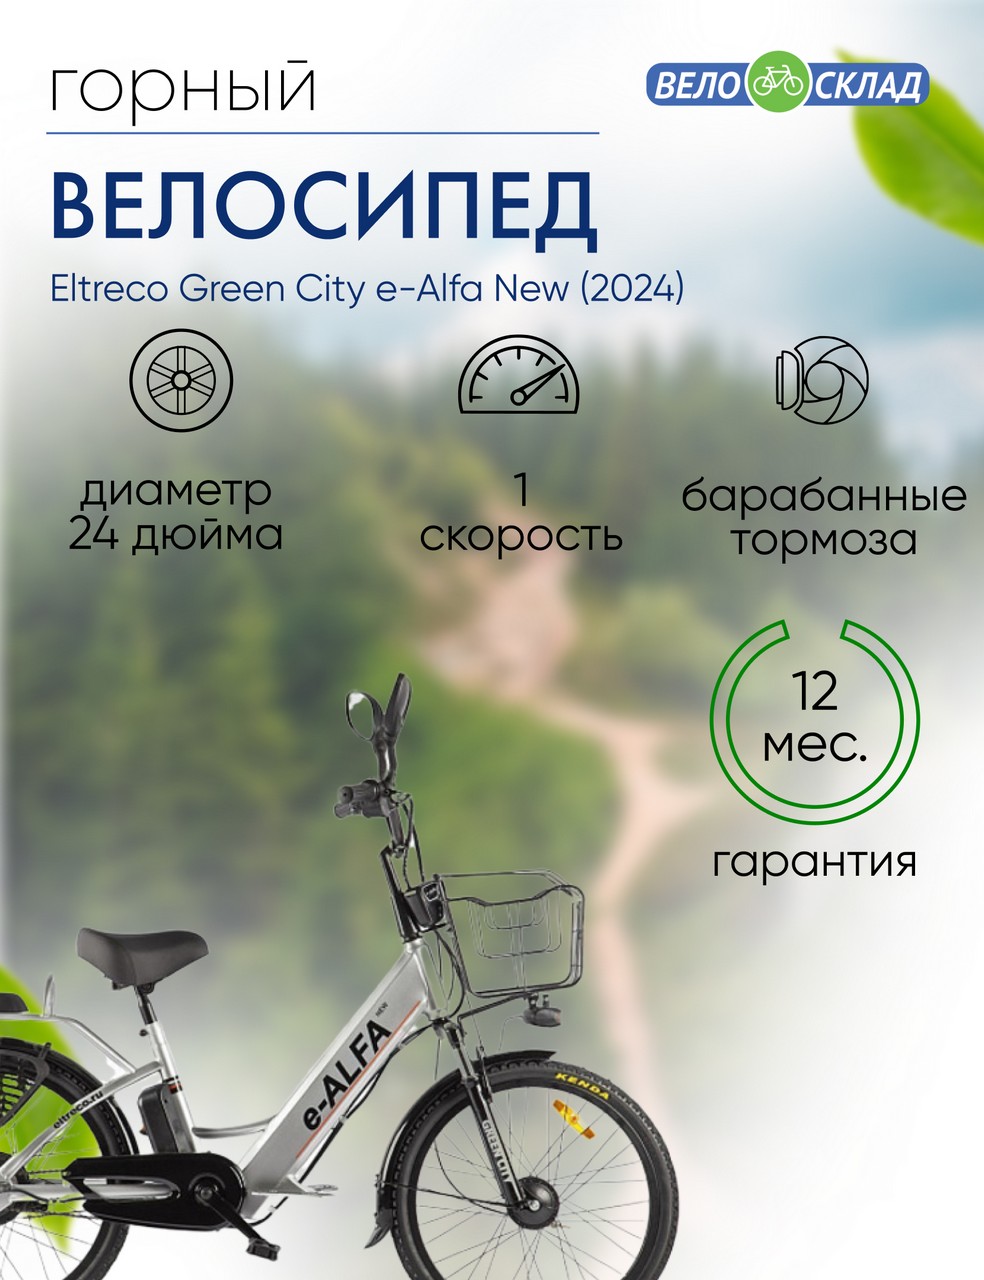 Электровелосипед Eltreco Green City e-Alfa New, год 2024, цвет Серебристый